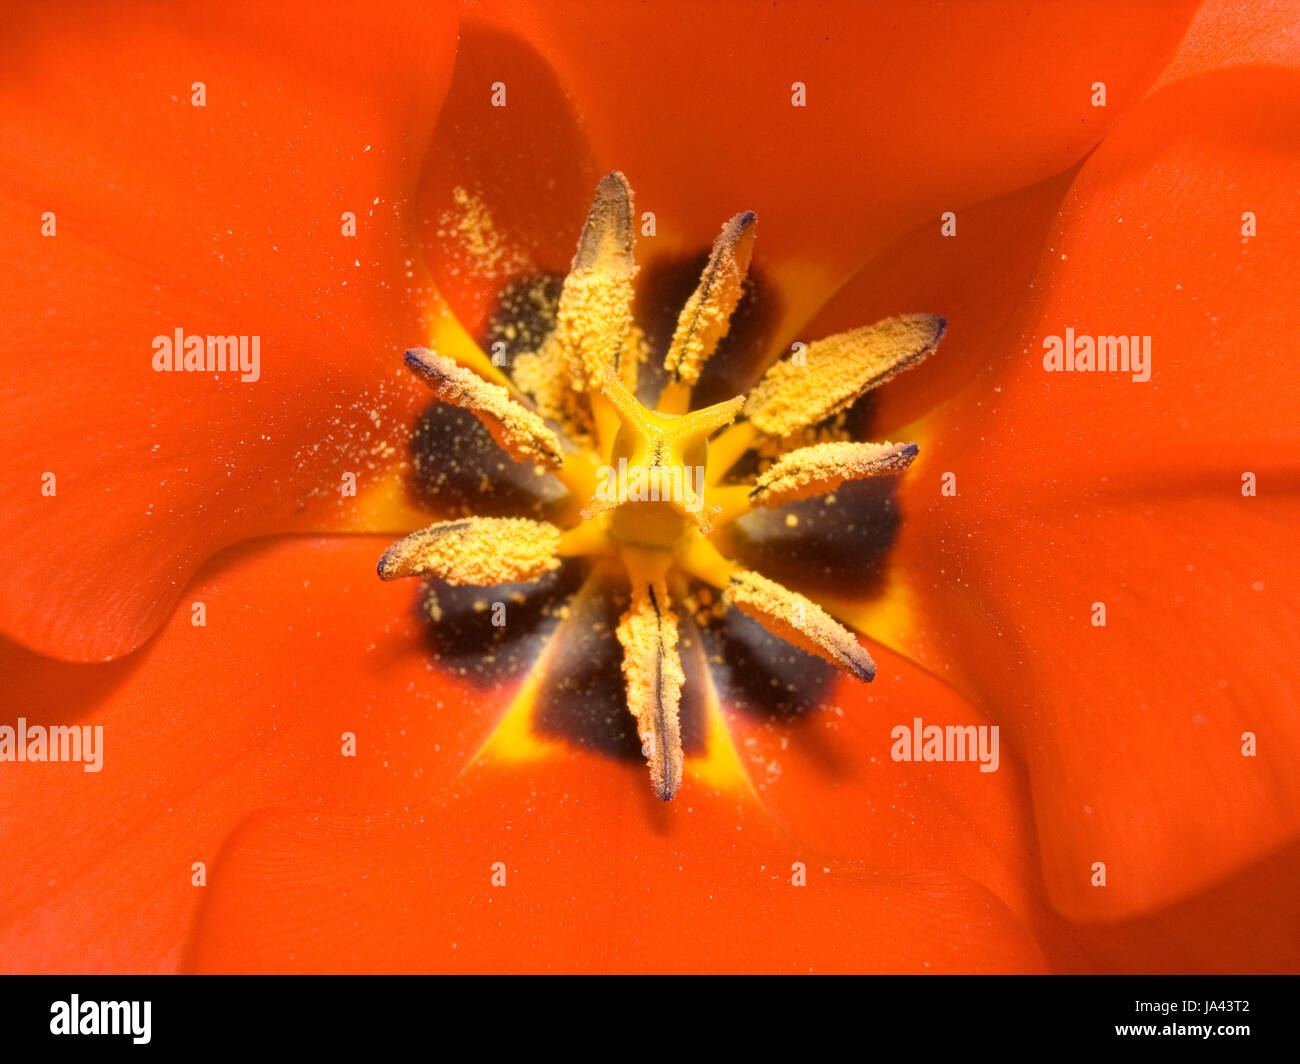 Tulipano arancione Foto Stock